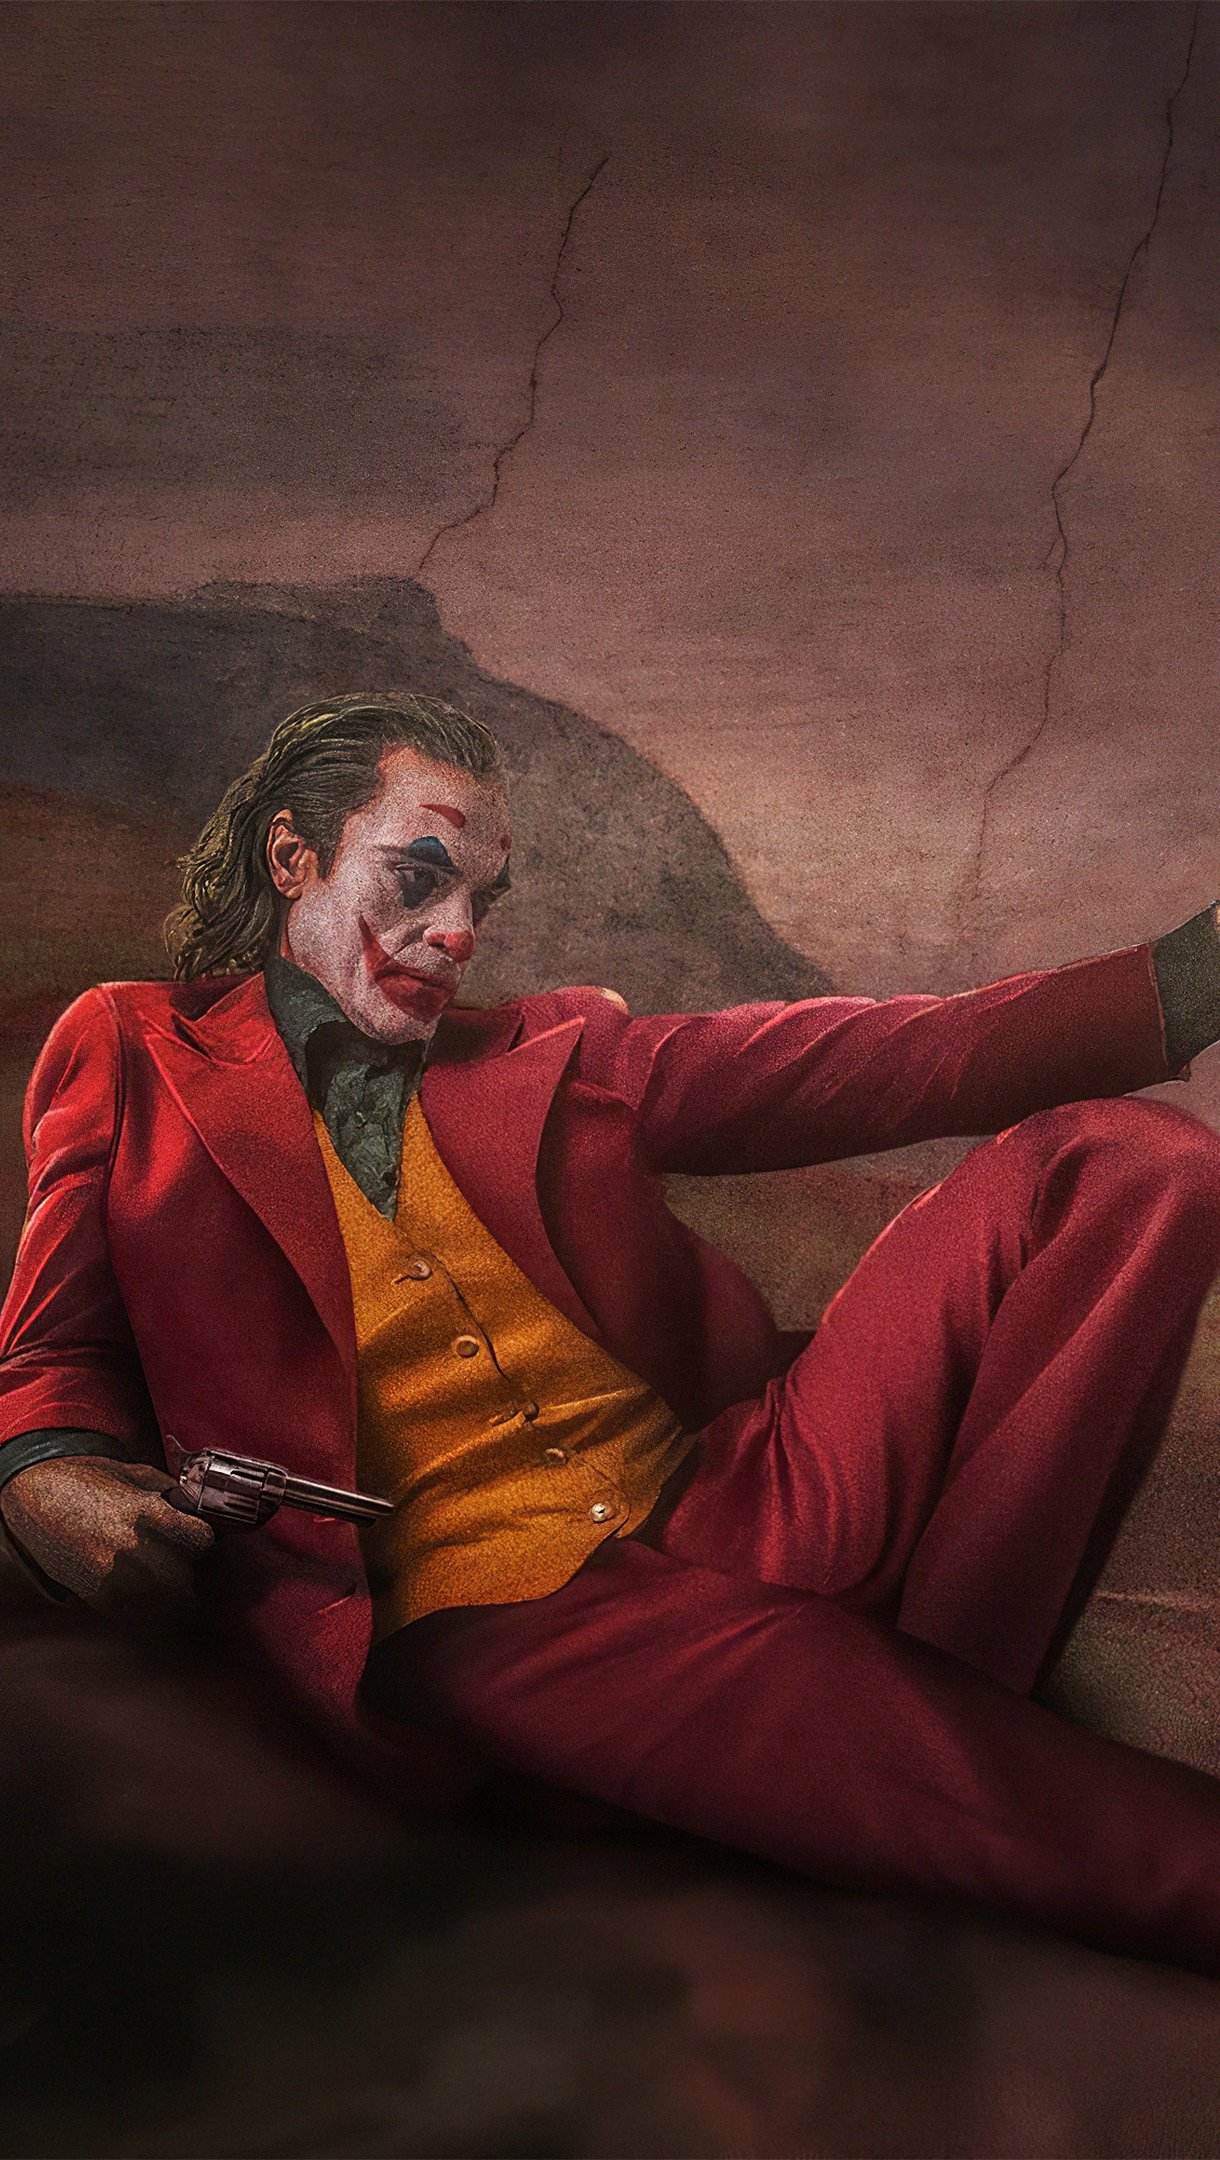 Joker as Joaquin Phoenix and Heath Ledger in Michelangelo painting Wallpaper  4k Ultra HD ID:4152